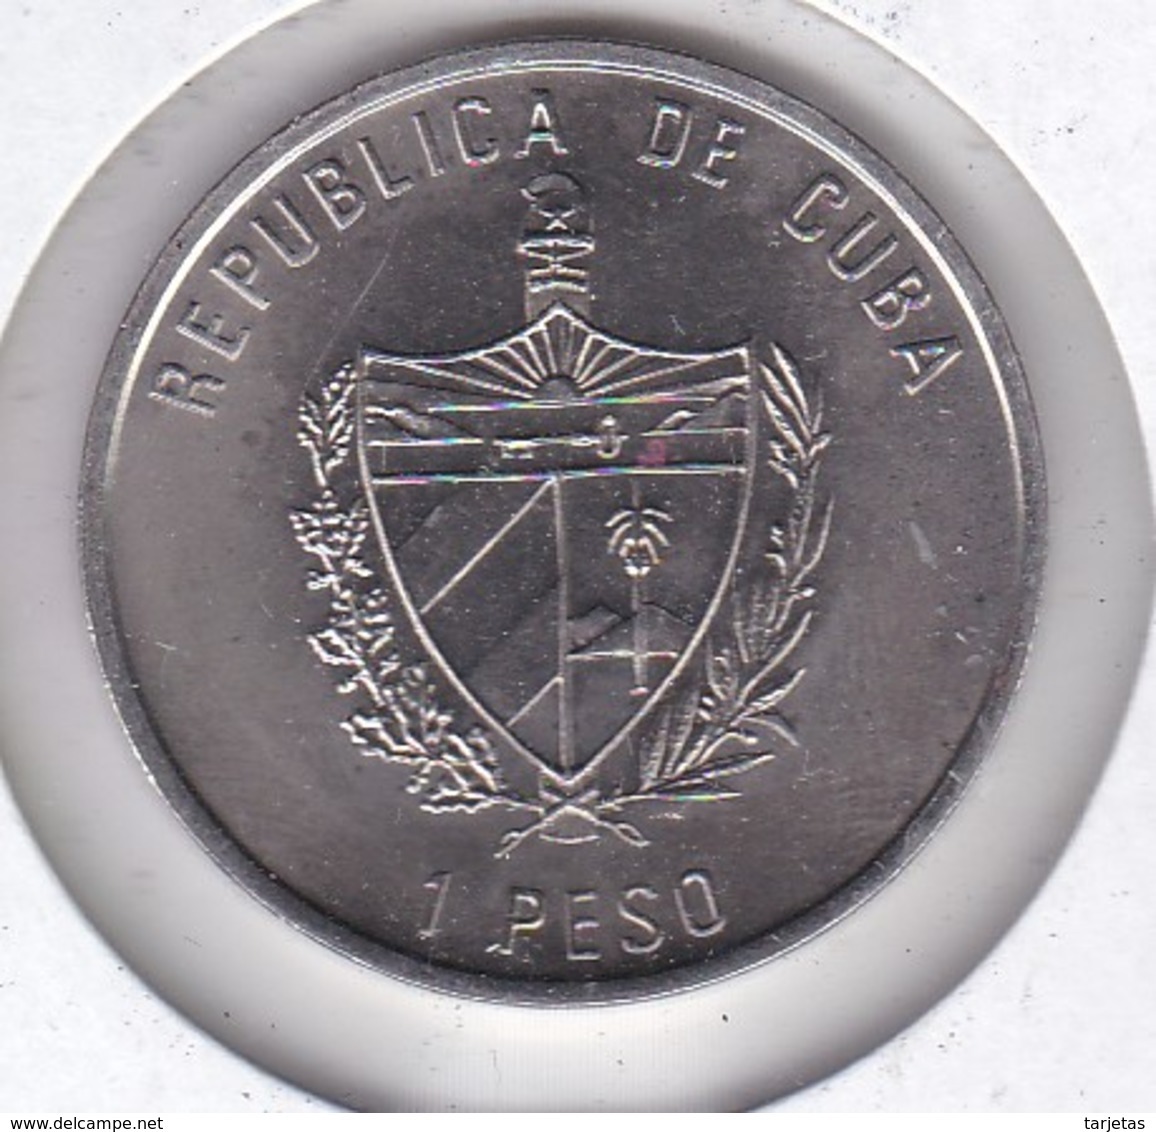 MONEDA DE CUBA DE 1 PESO DEL AÑO 1997 FLORA CARIBE - FLOR-FLOWER (COIN) NUEVA-MINT - Cuba